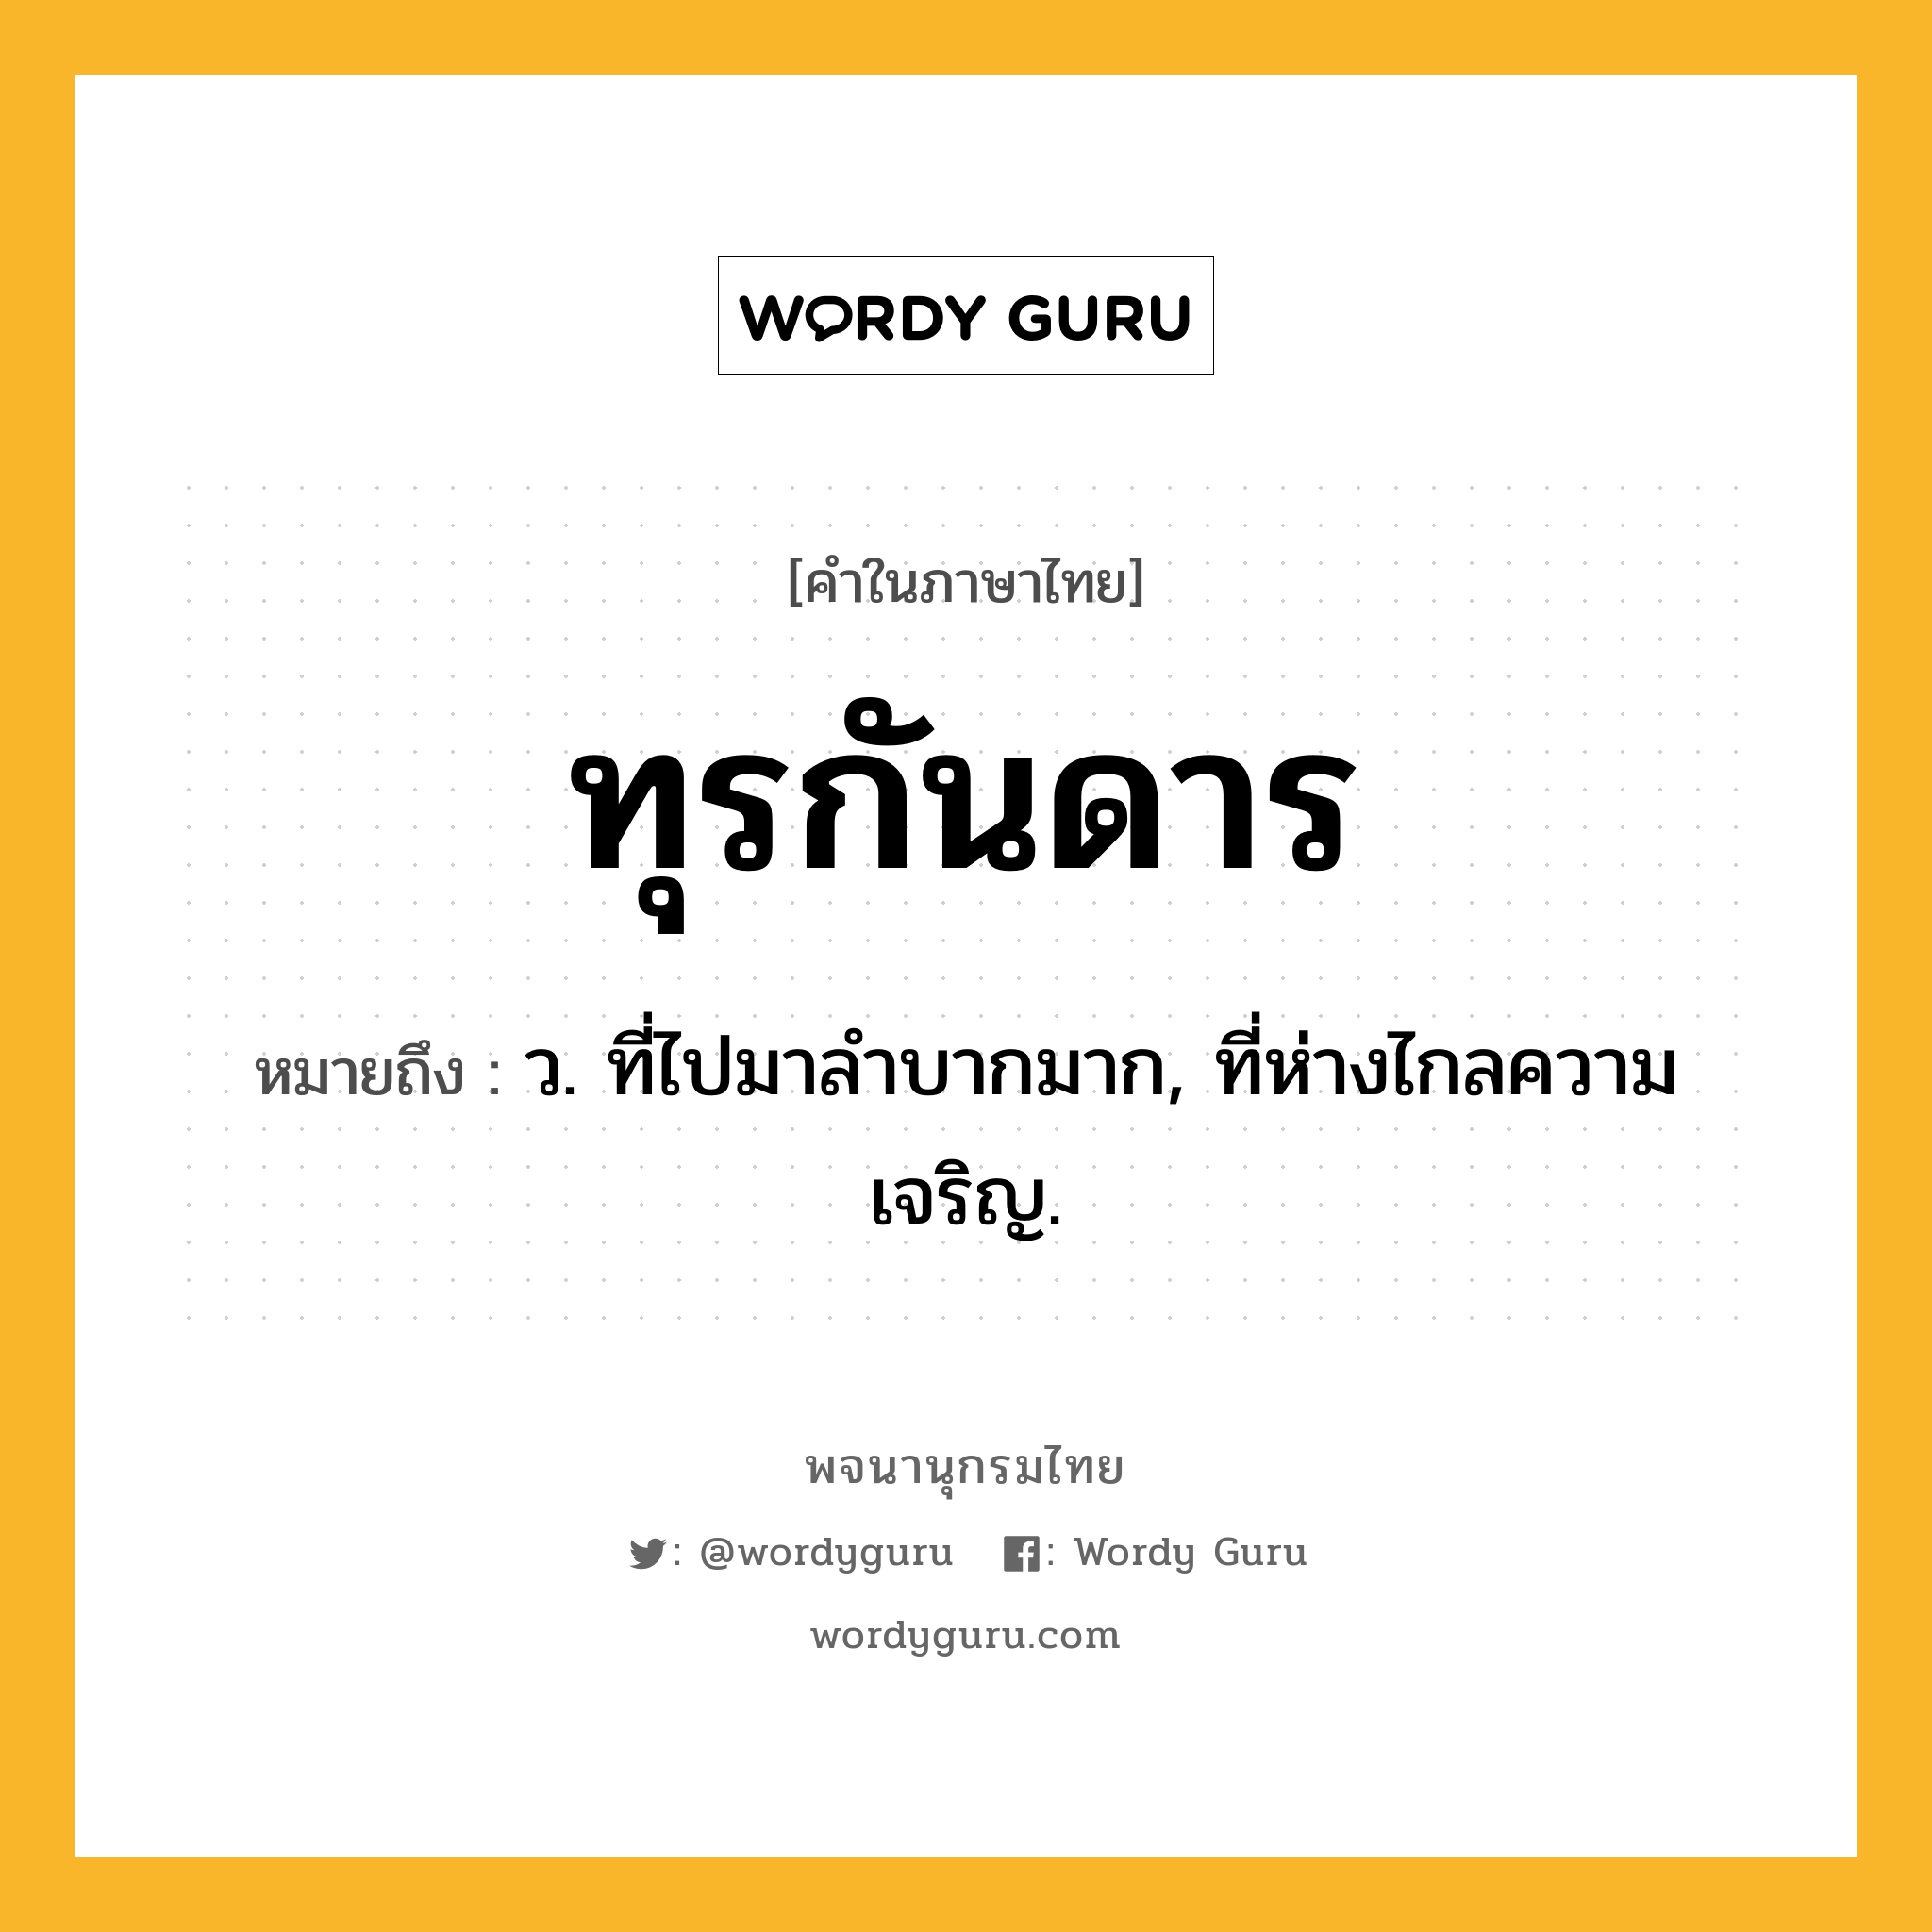 ทุรกันดาร ความหมาย หมายถึงอะไร?, คำในภาษาไทย ทุรกันดาร หมายถึง ว. ที่ไปมาลําบากมาก, ที่ห่างไกลความเจริญ.